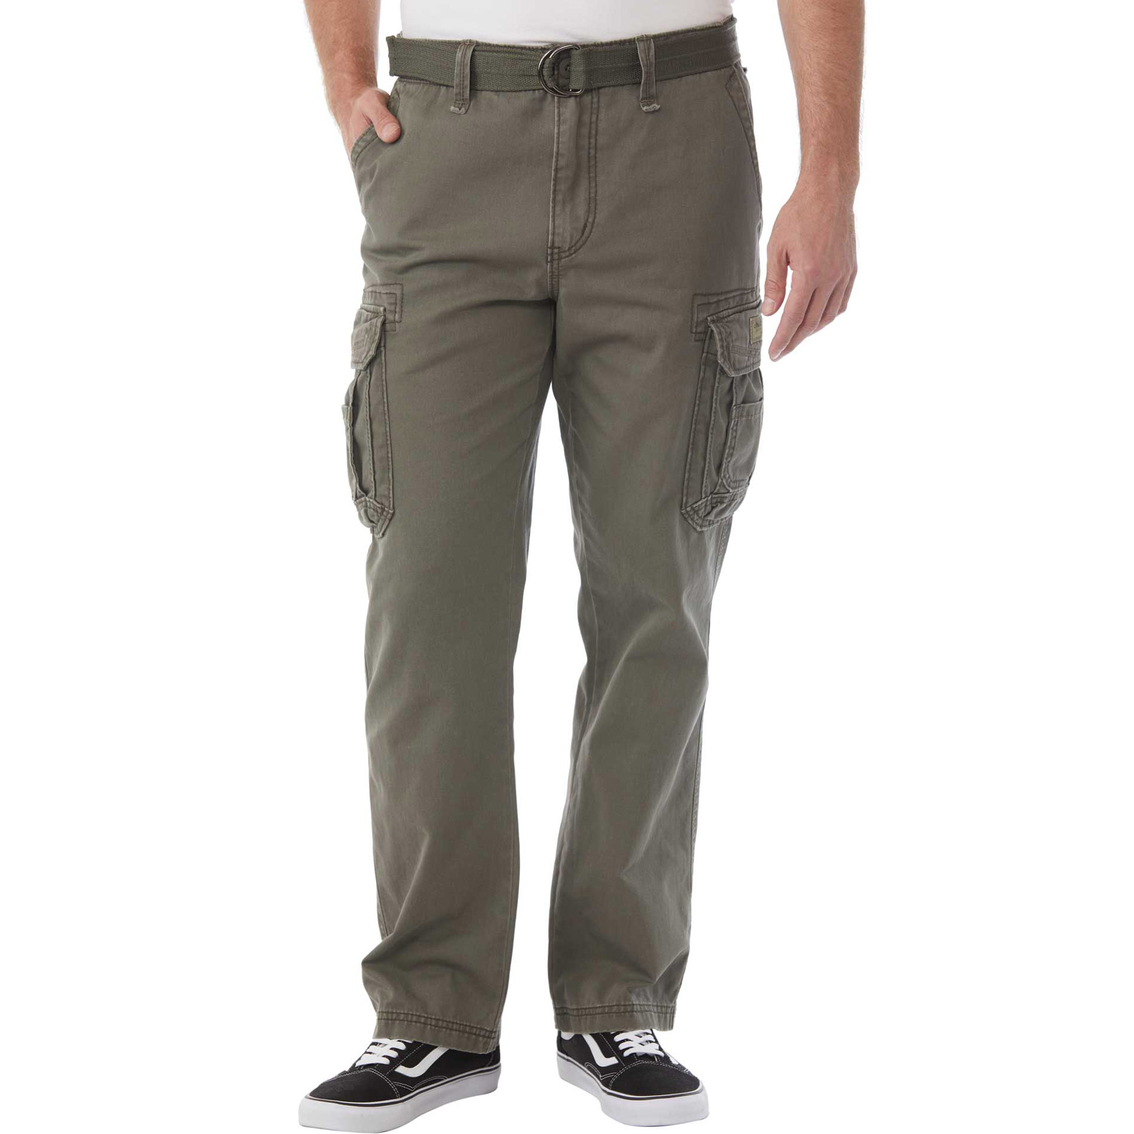 Unionbay Survivor Pants With Belt | Pants | Clothing & Accessories ...